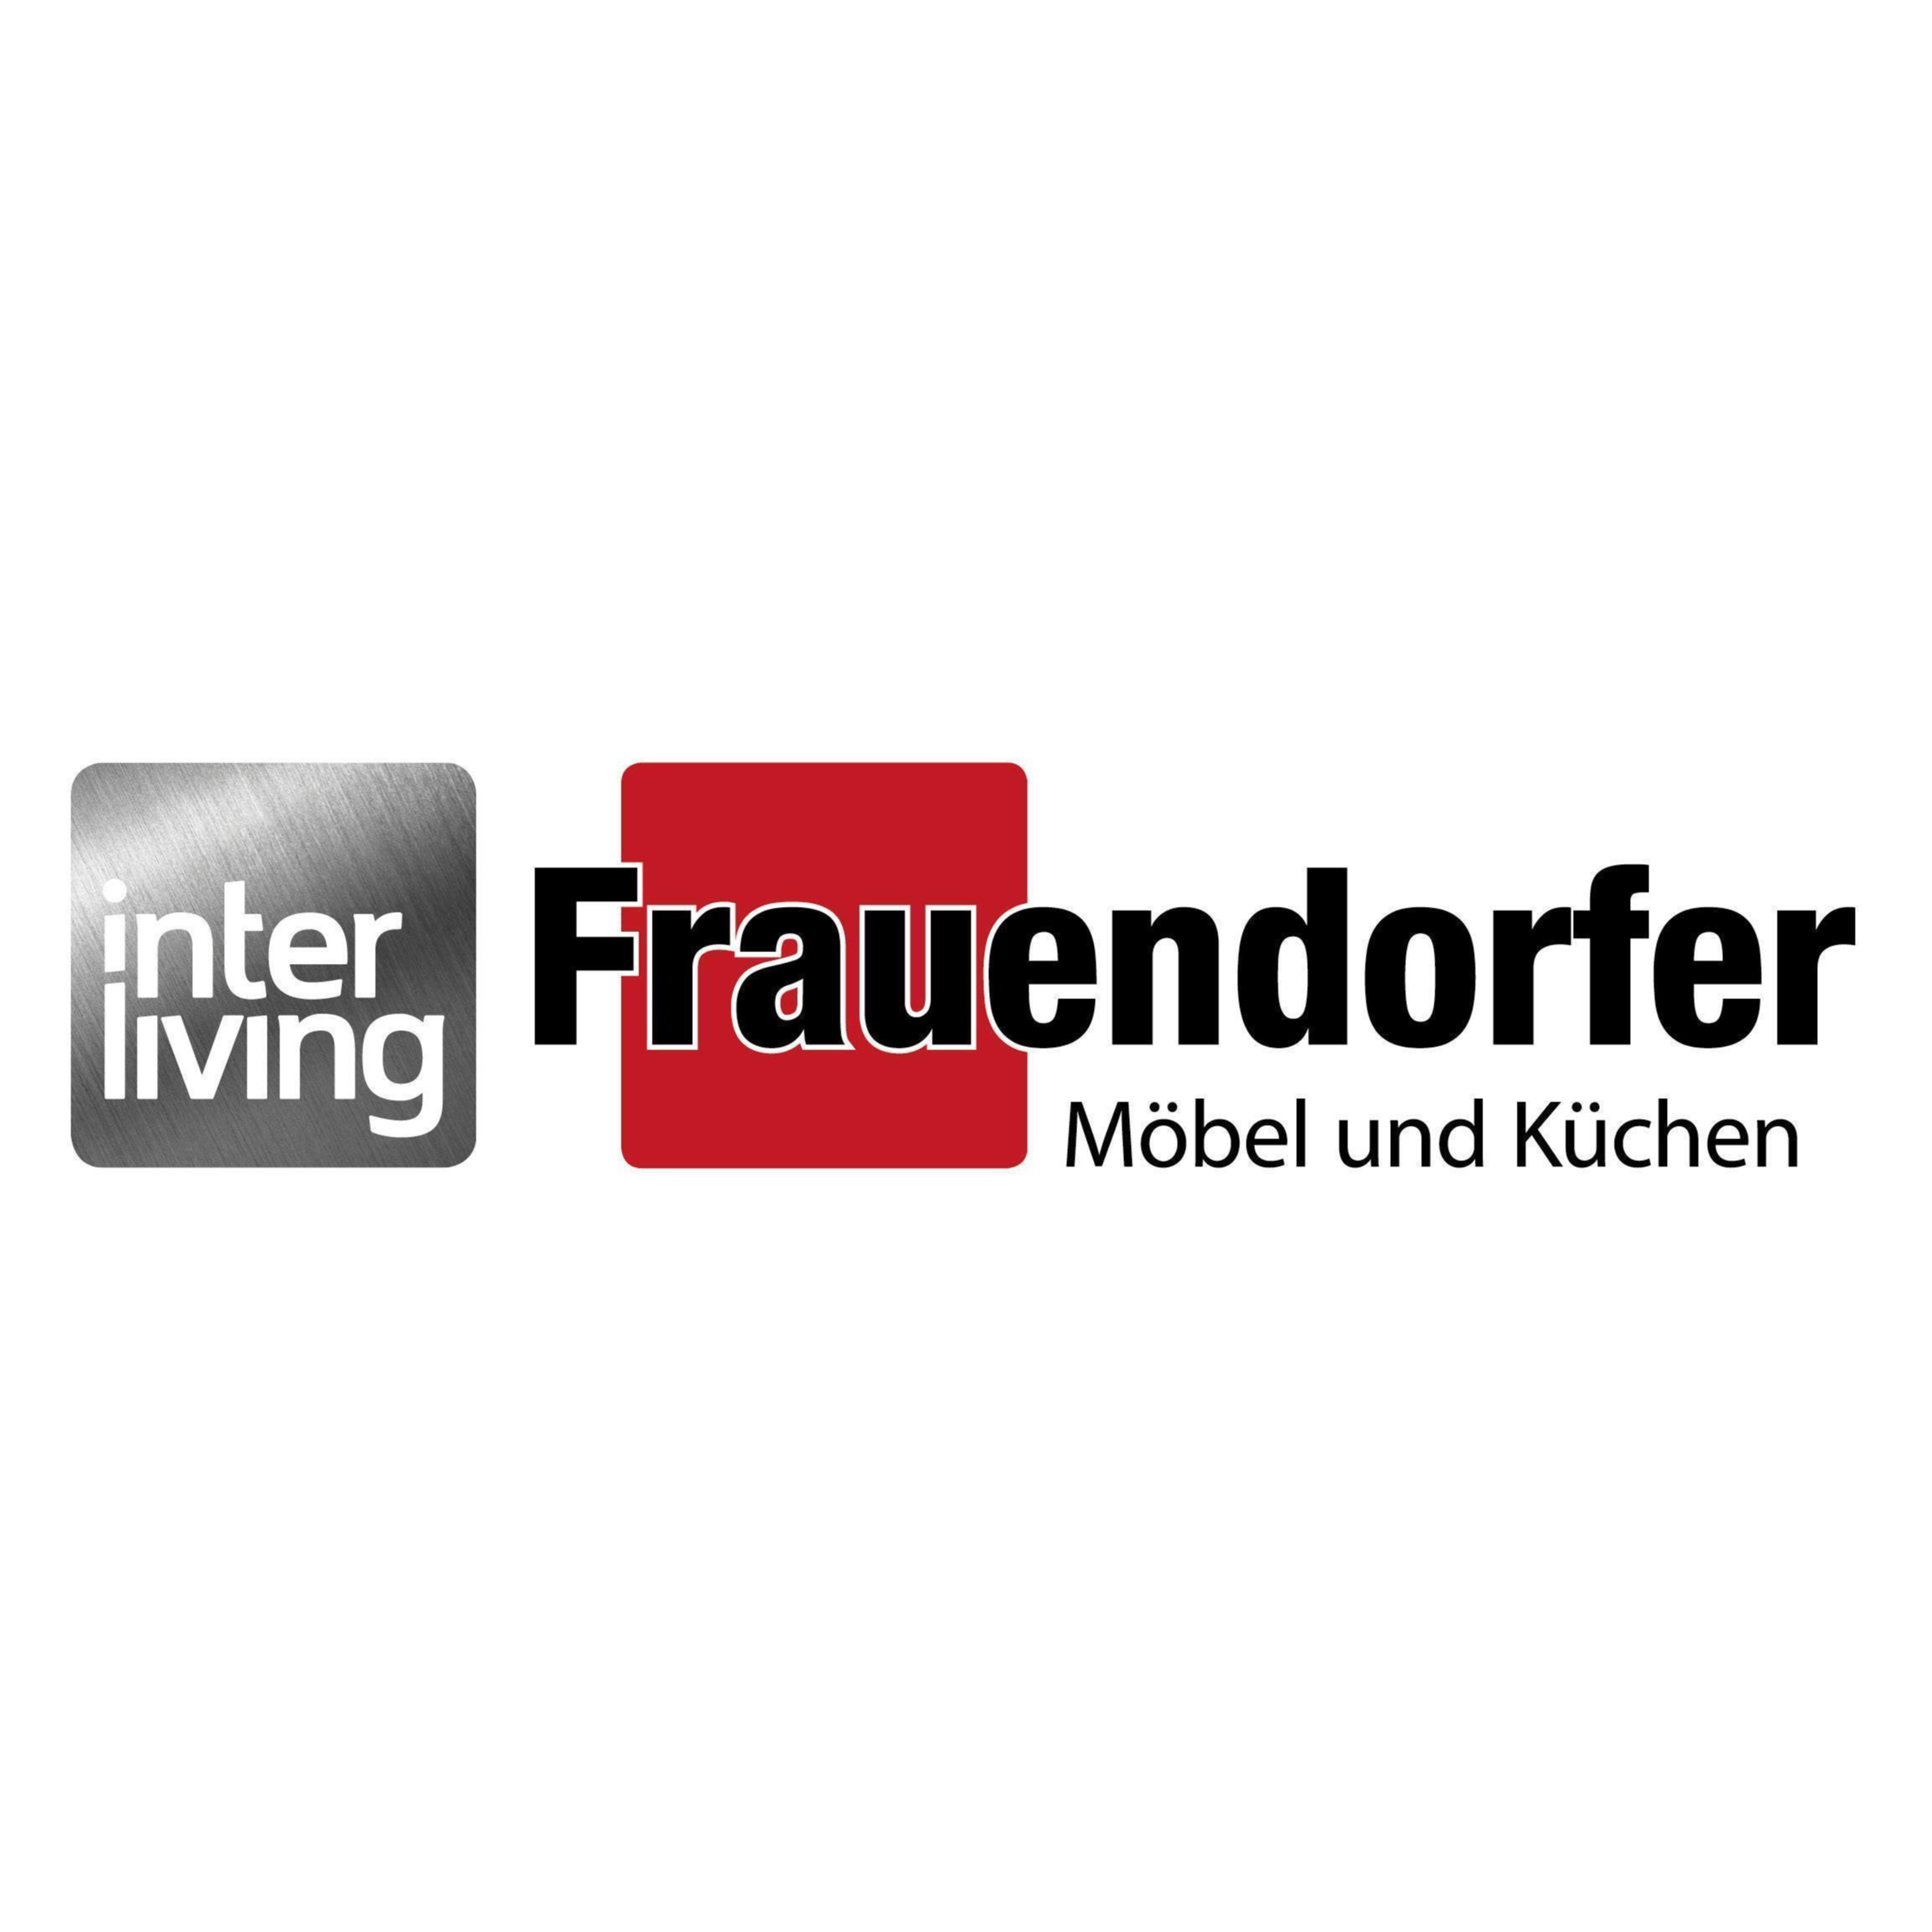 Logo Frauendorfer | Möbel und Küchen